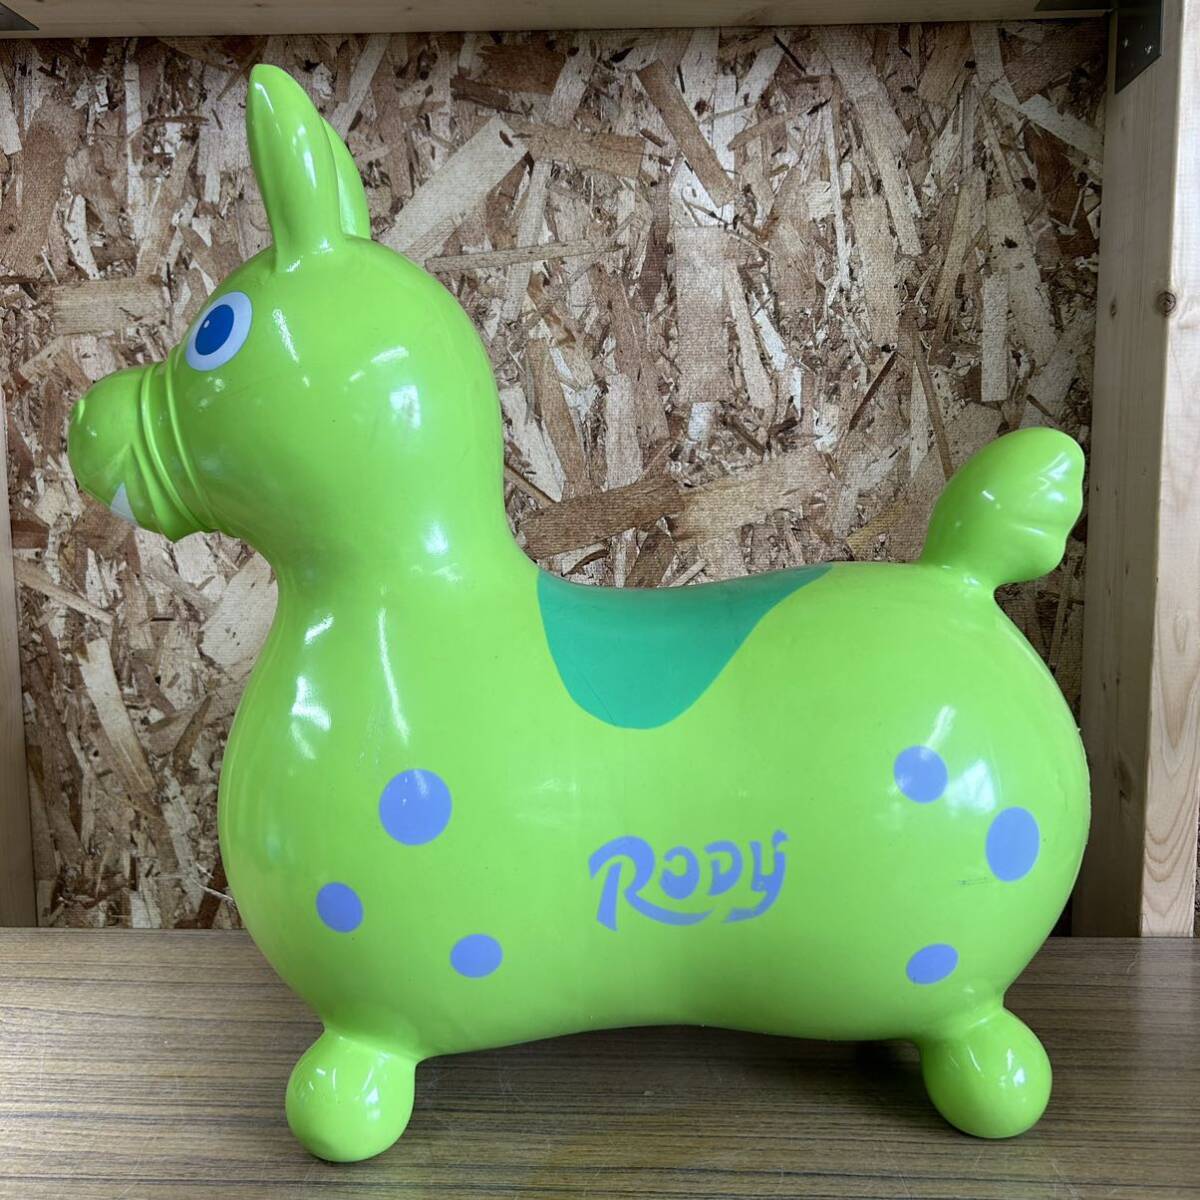 RODY ロディ 乗用玩具 乗り物 空気入れ無し おもちゃ 緑 グリーン ロディー イタリア製 幼児向け ライムグリーン _画像2